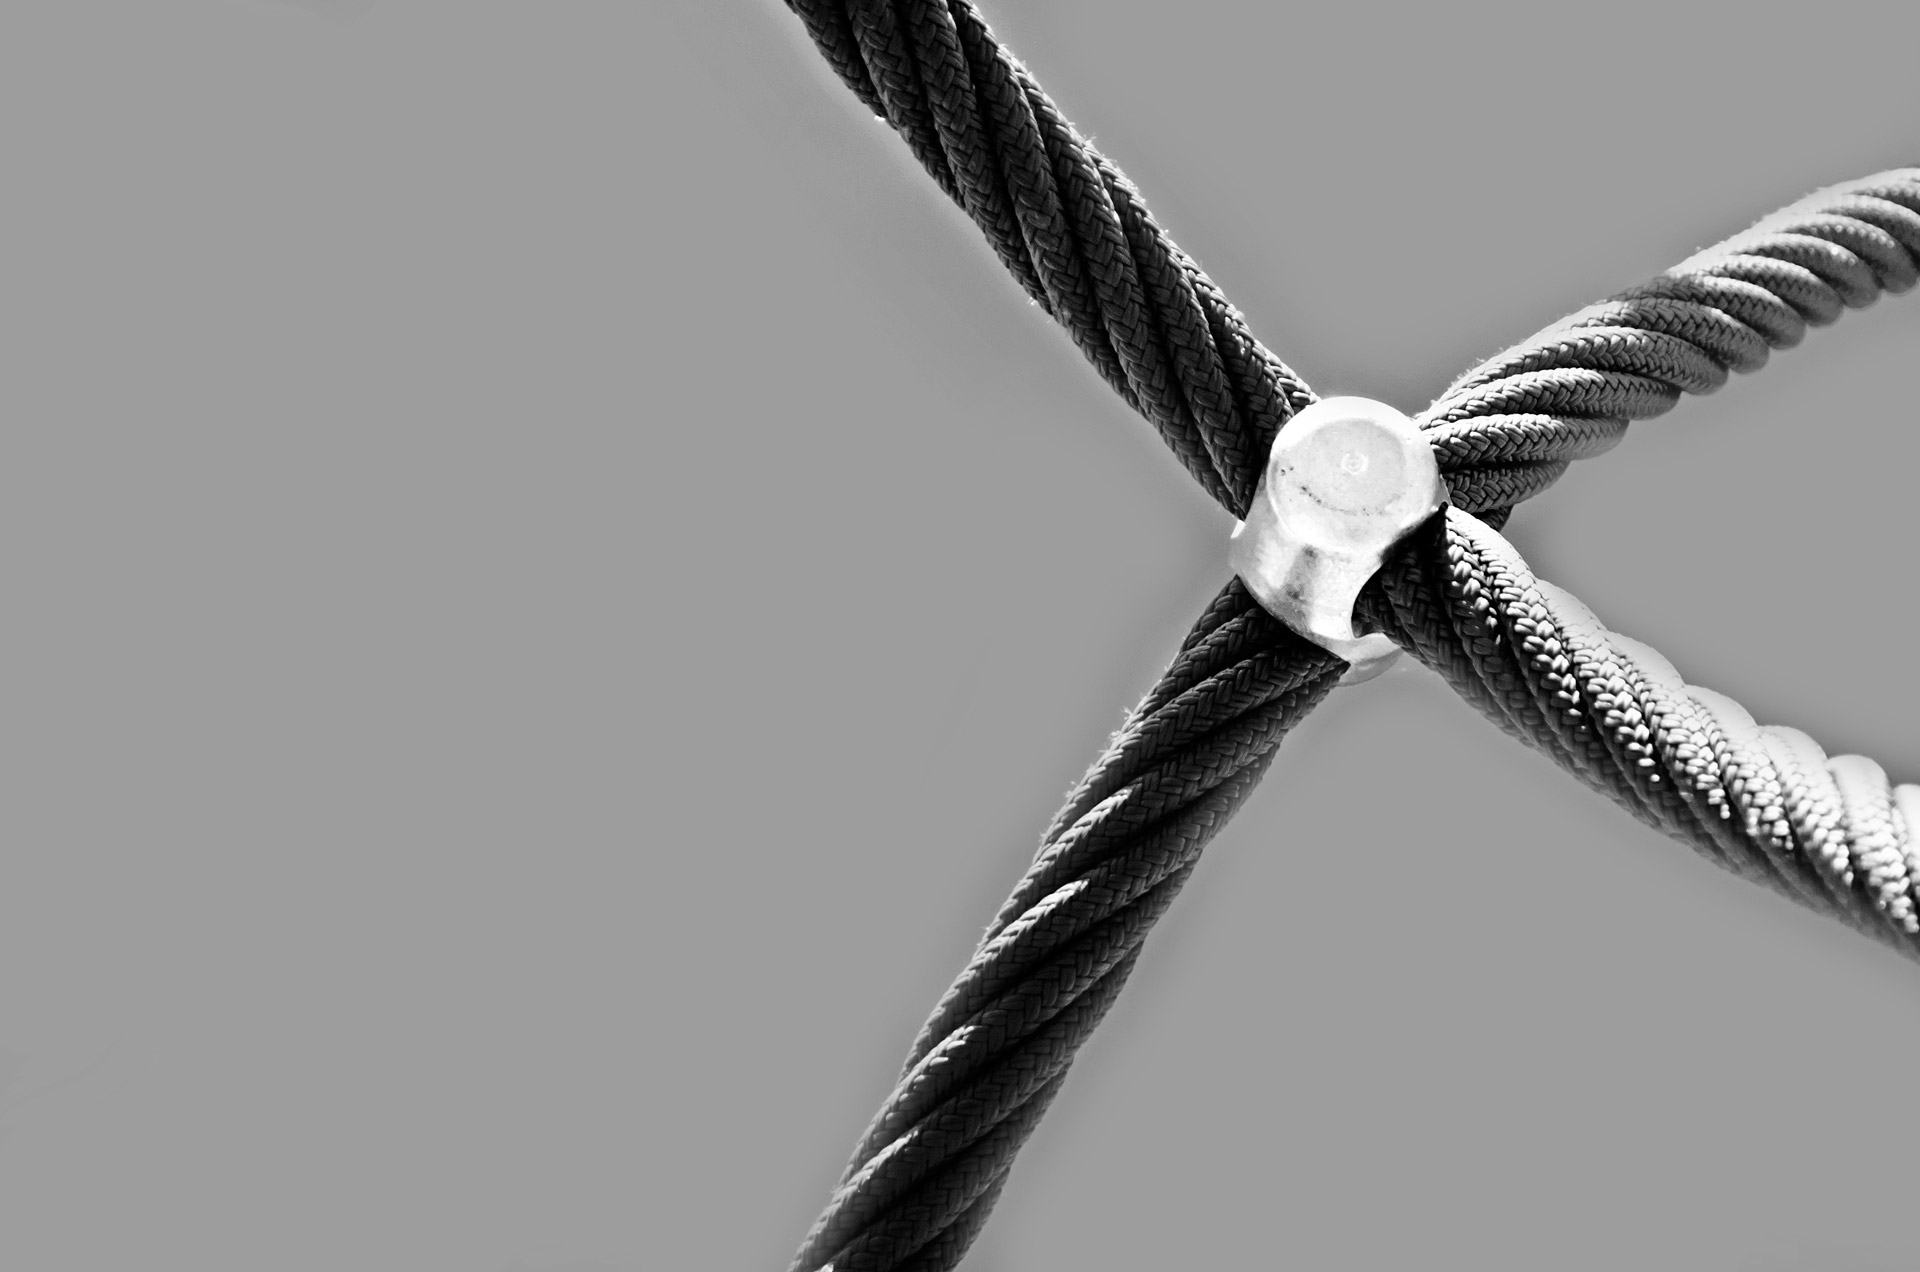 cordage rope background free photo